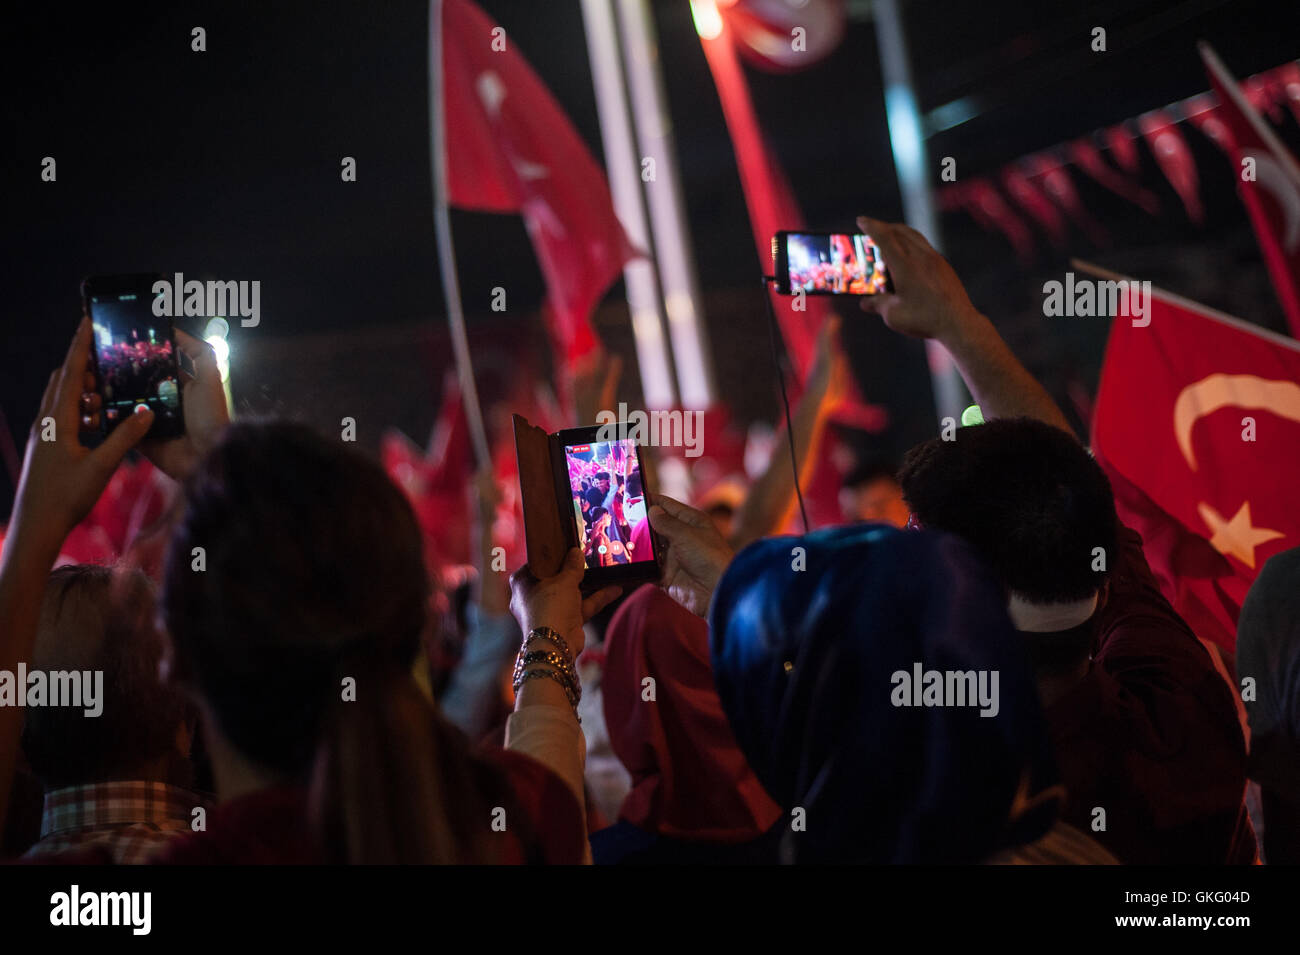 Handy-Fotografie an pro Akp türkische Regierung Rallye feiert einen gescheiterten Putschversuch Istanbul Türkei Stockfoto